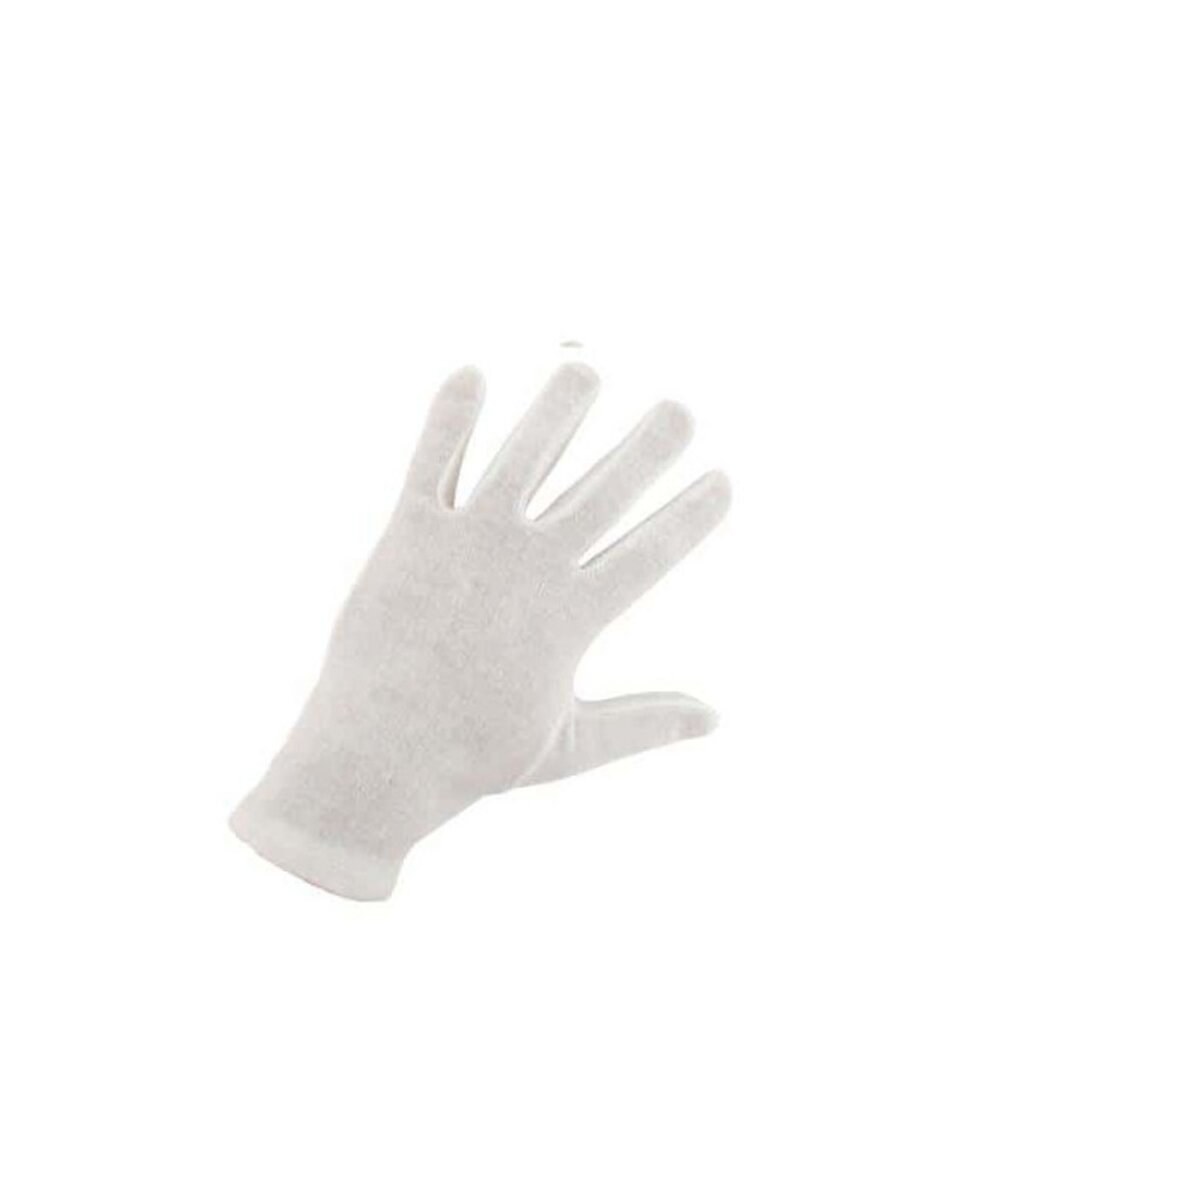 EURO PROTECTION Gants coton blanc Taille XL/10 EP 4150